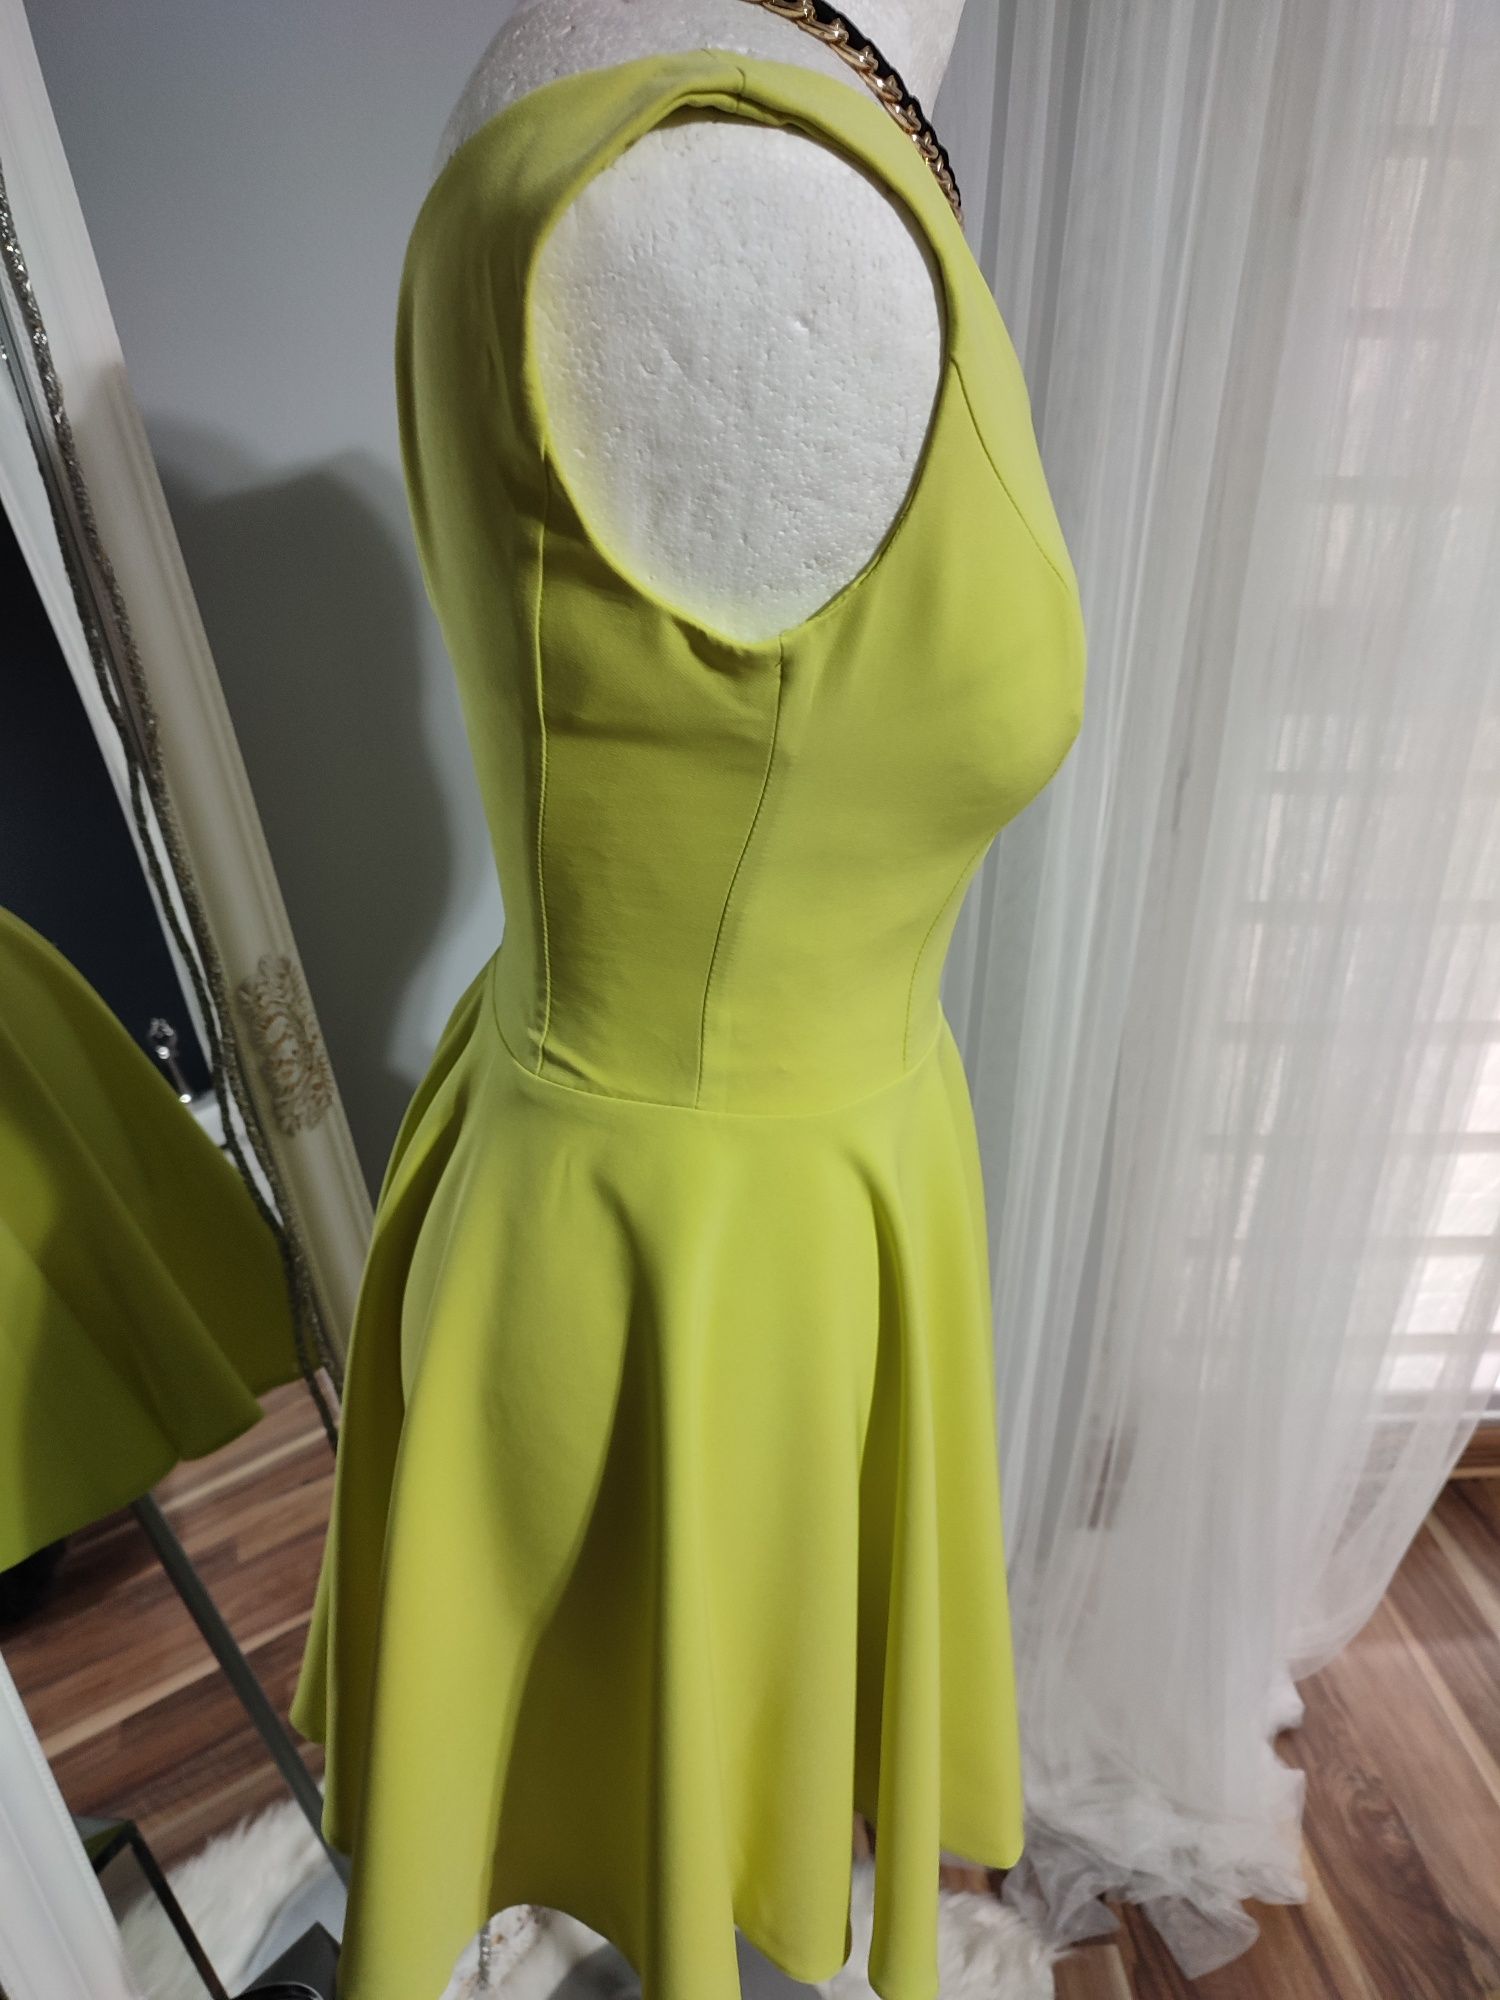 Limonkowa sukienka XS NOWA